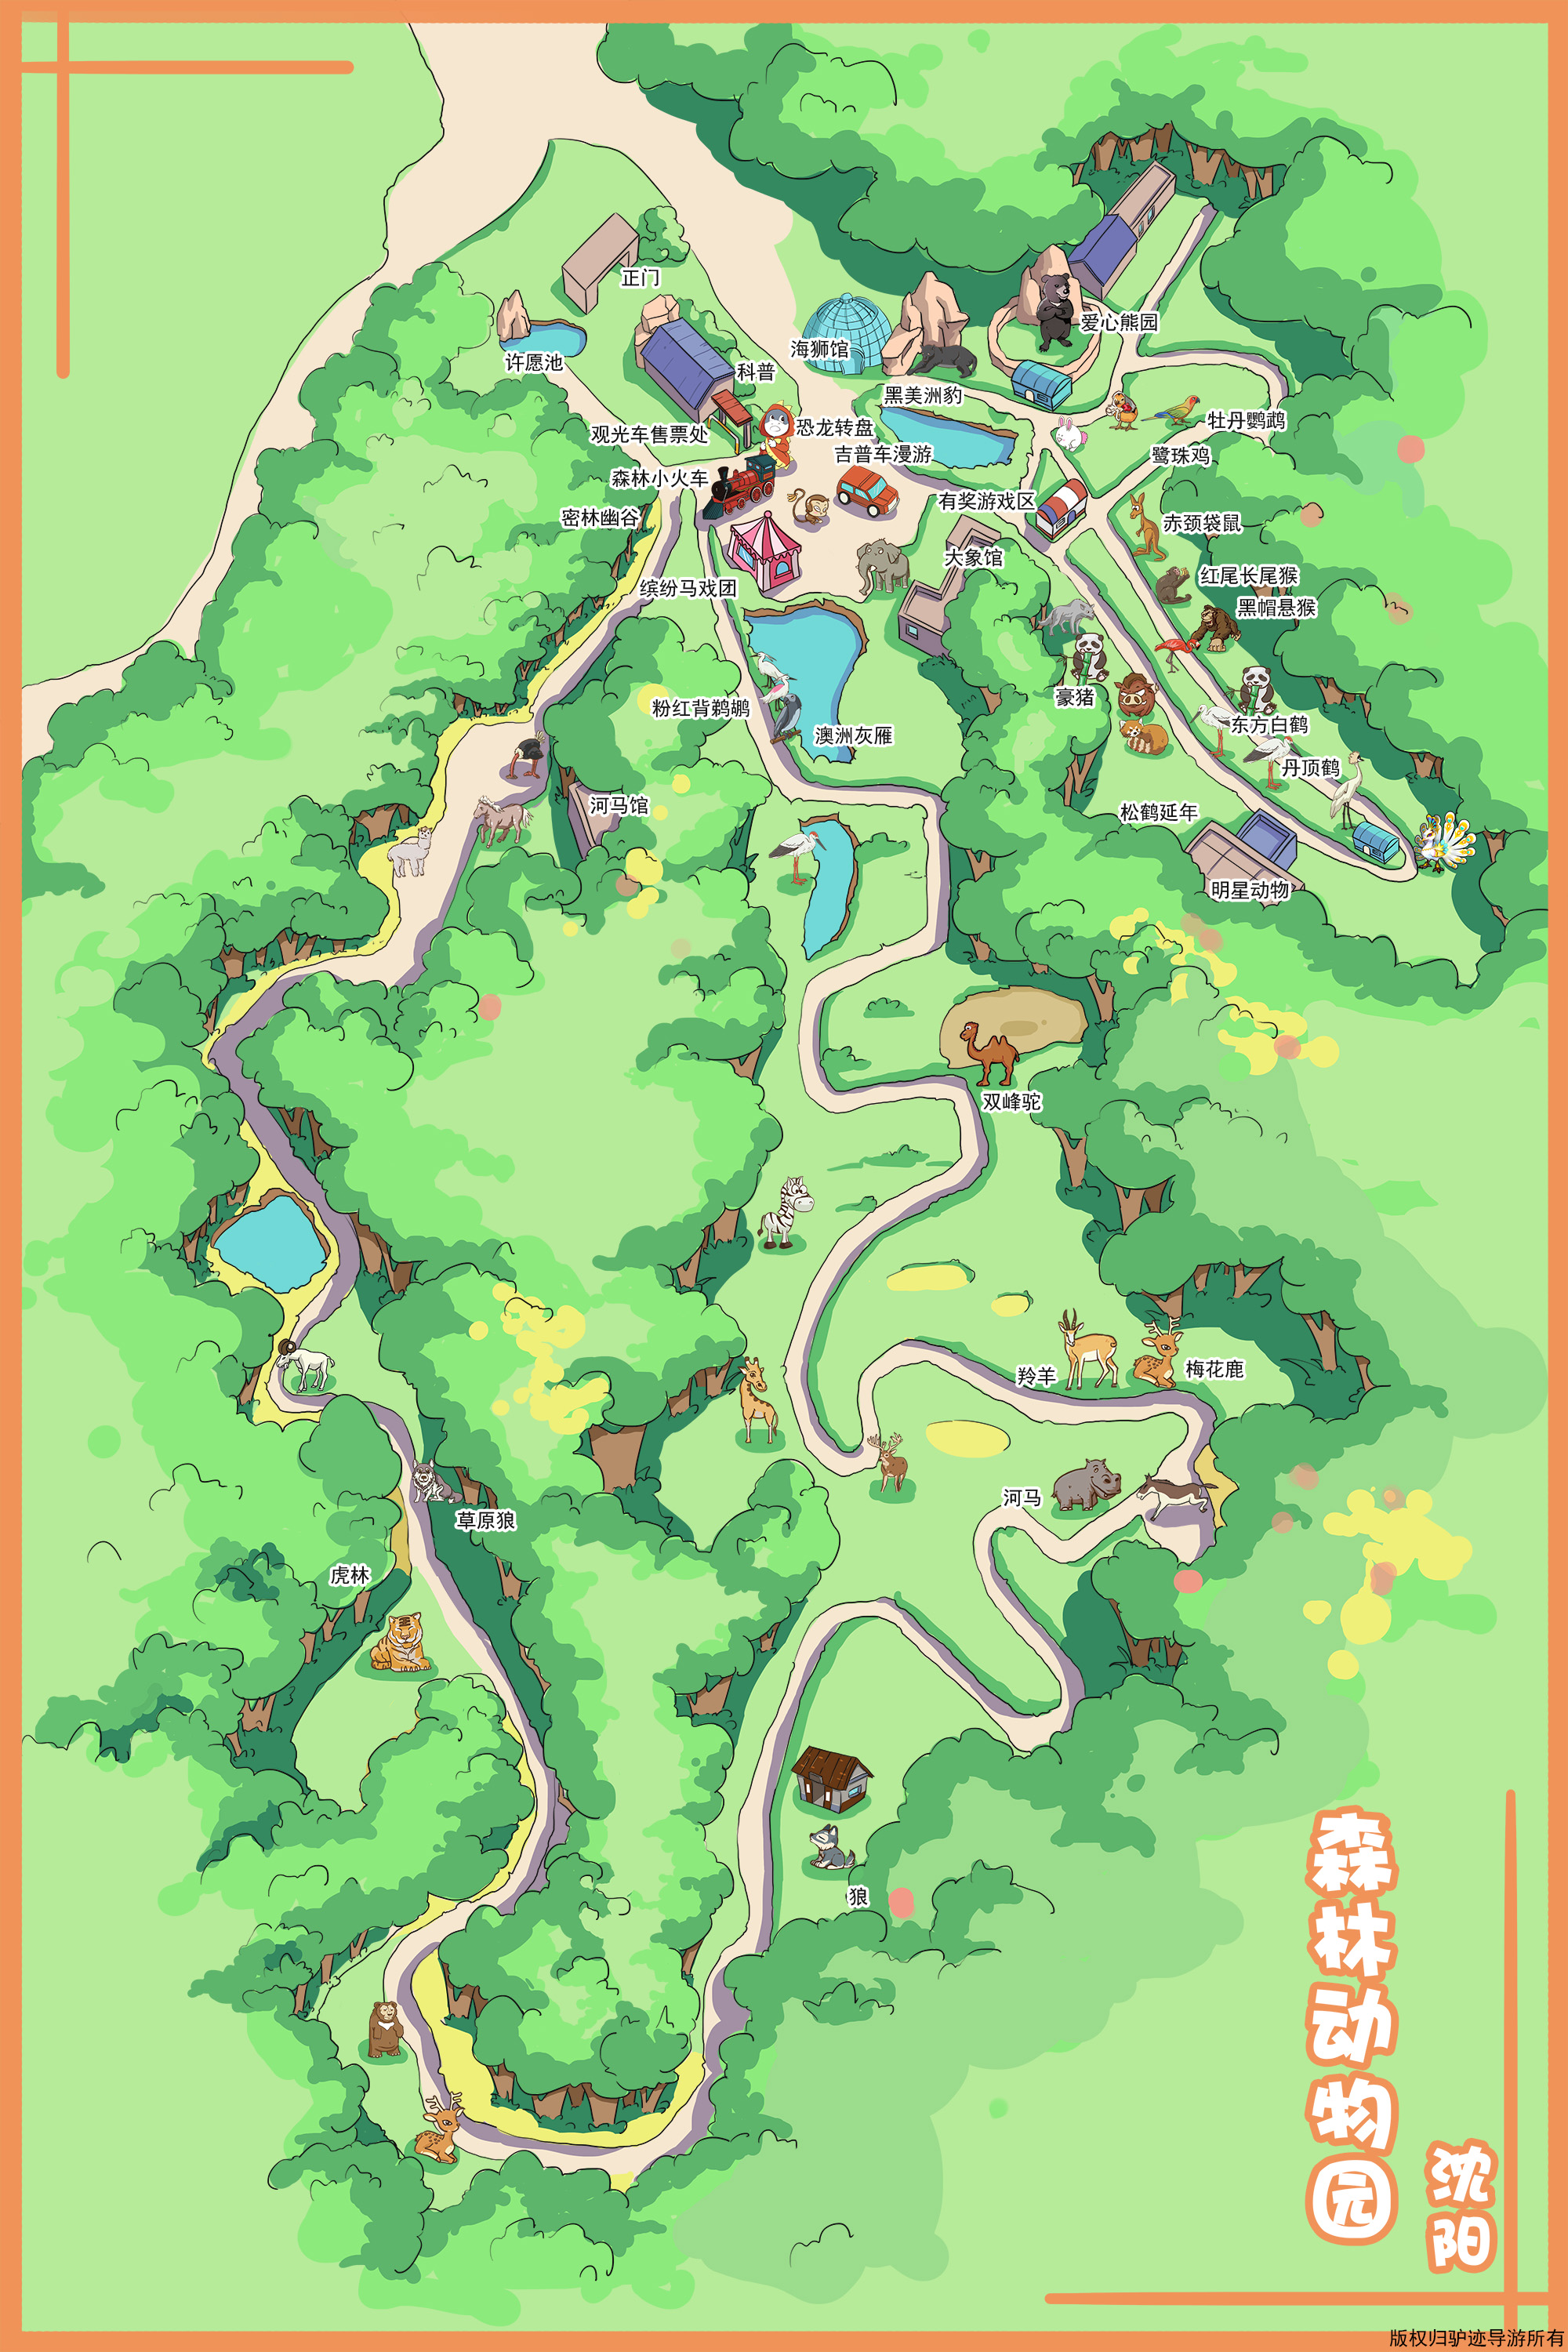 沈阳森林野生动物园手机导游【全景地图、园内